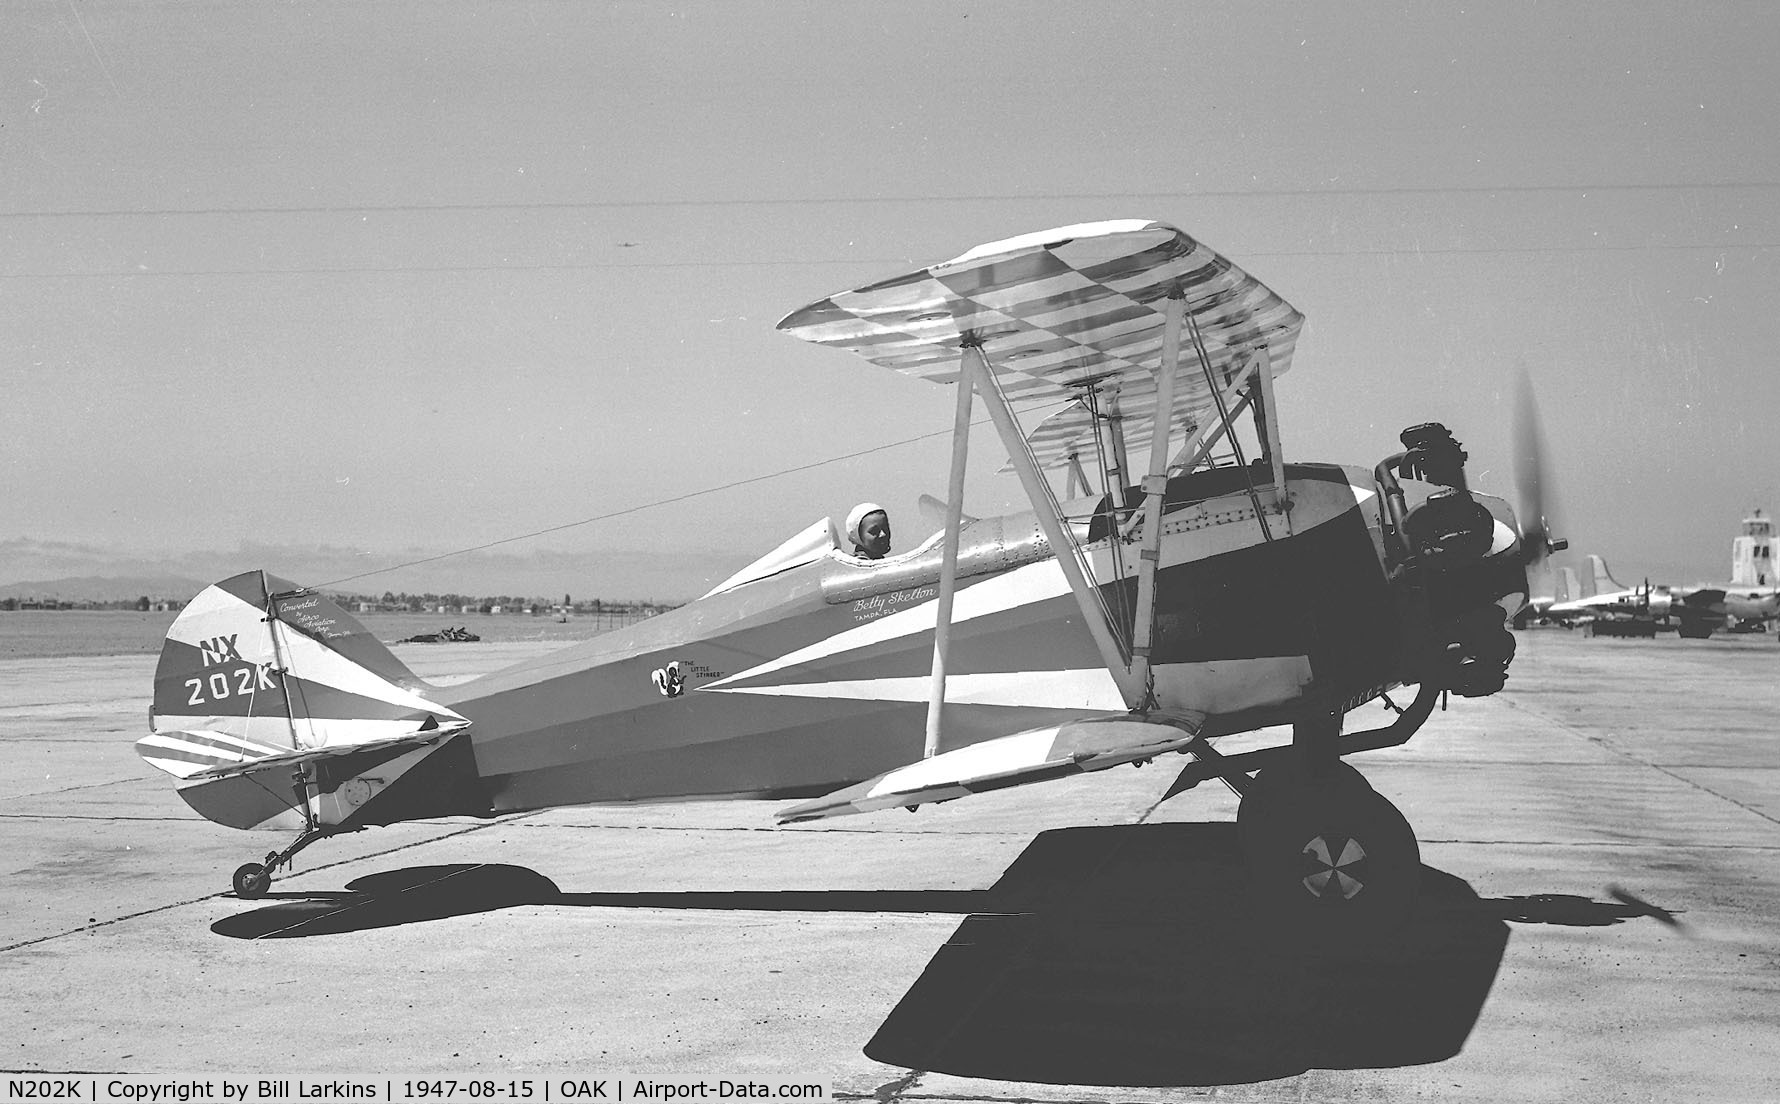 N202K, 1948 Great Lakes 2T-1 Sport Trainer C/N 28, Bety Skelton's aerobatic plane